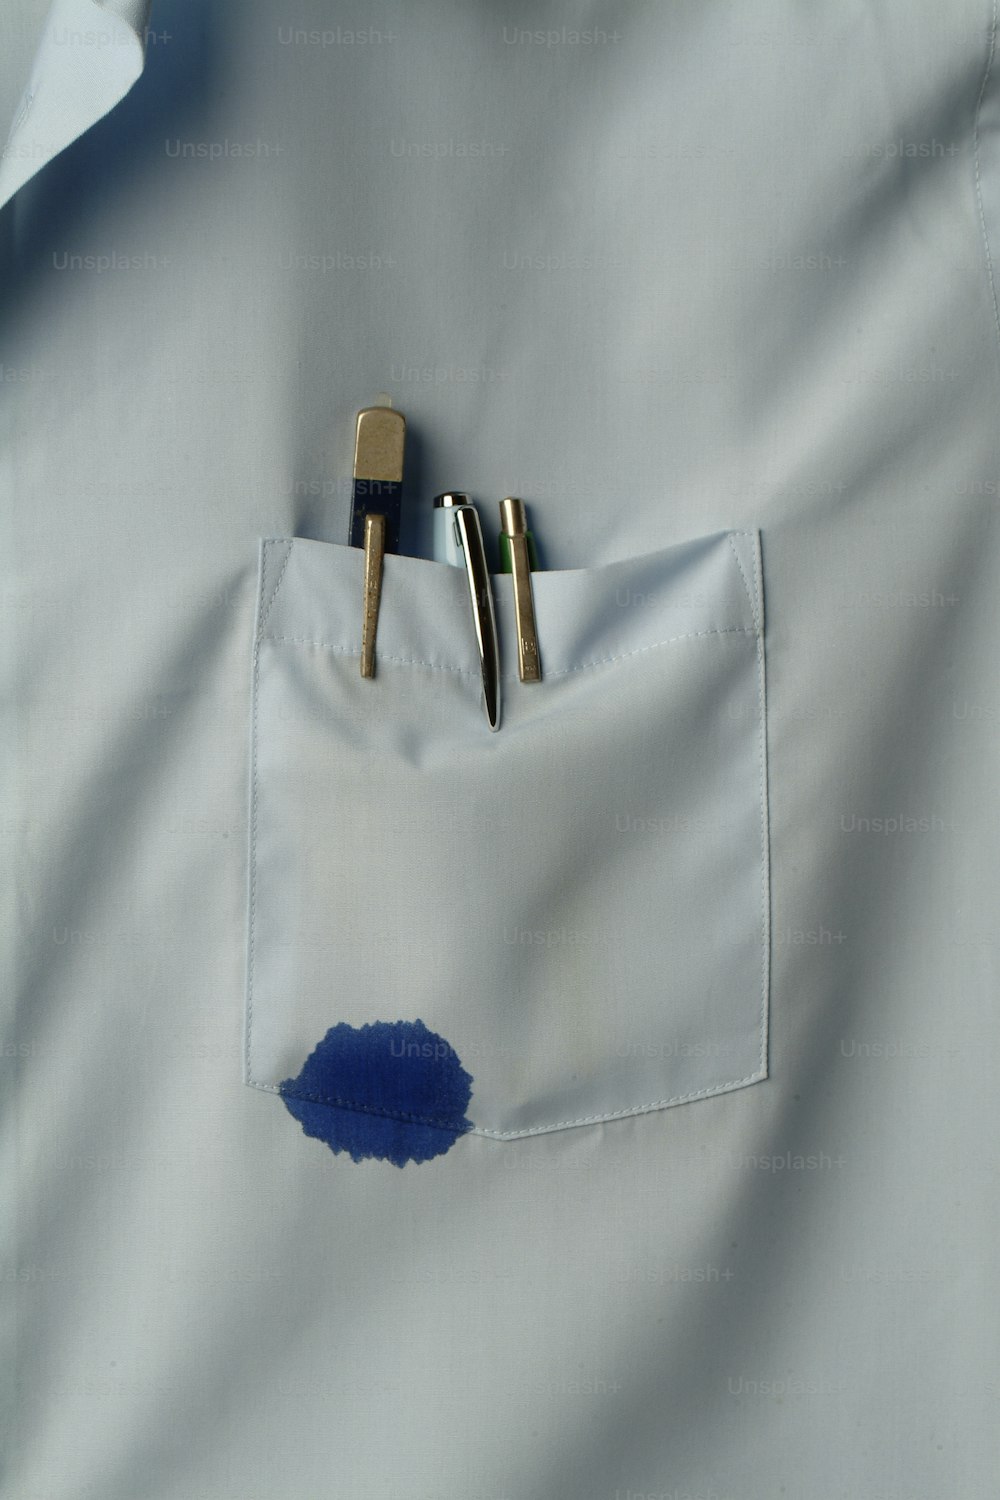 1970年代のカリフォルニア州、数本のペンが入ったシャツのポケットのクローズアップ写真(写真:Tom Kelley/Getty Images)